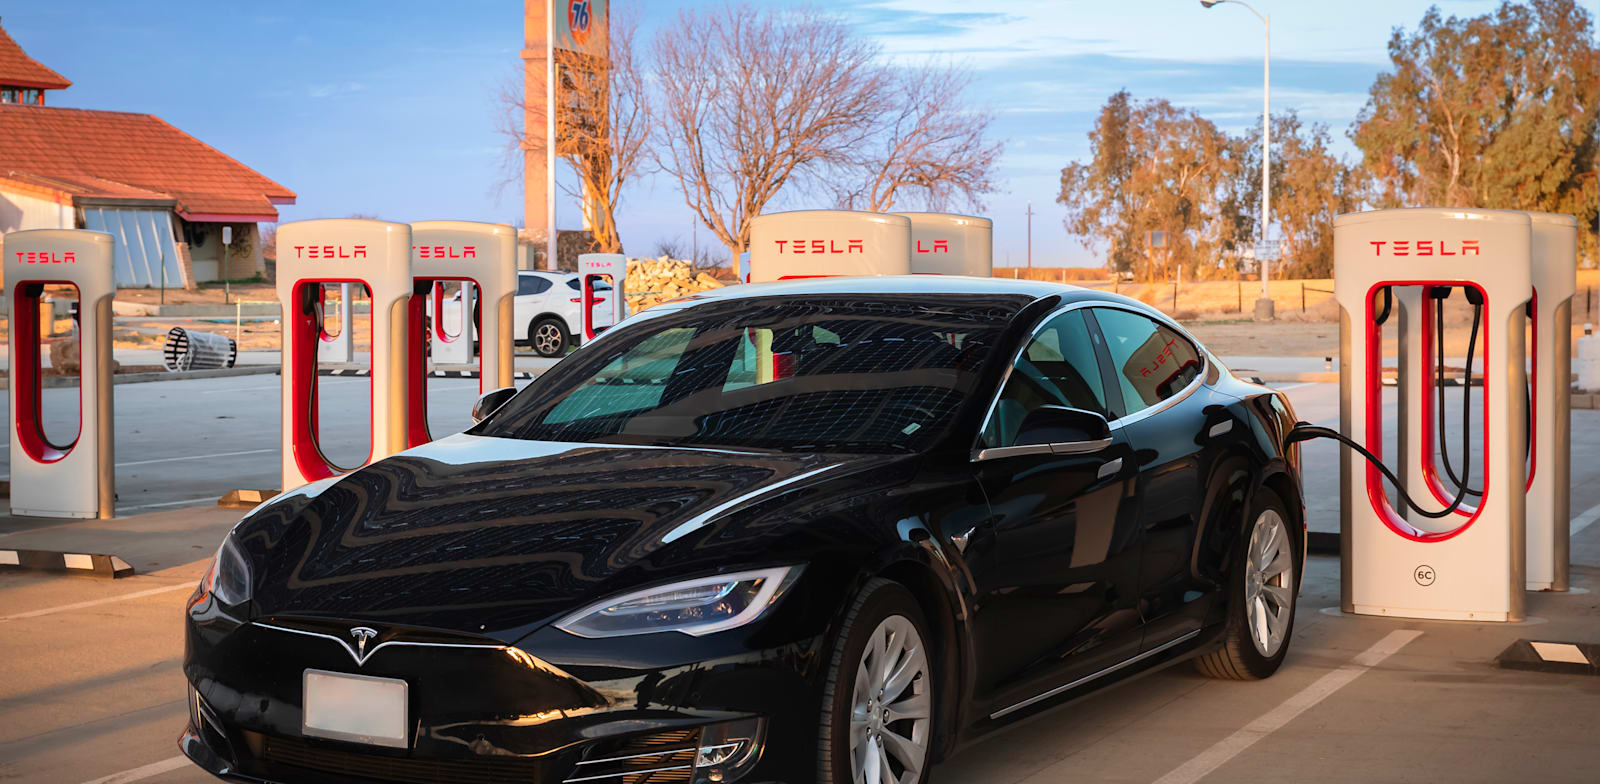 טסלה. העלייה במספר הרכבים החשמליים (140%) גורמת לעלייה בביקוש לחשמל / צילום: Shutterstock